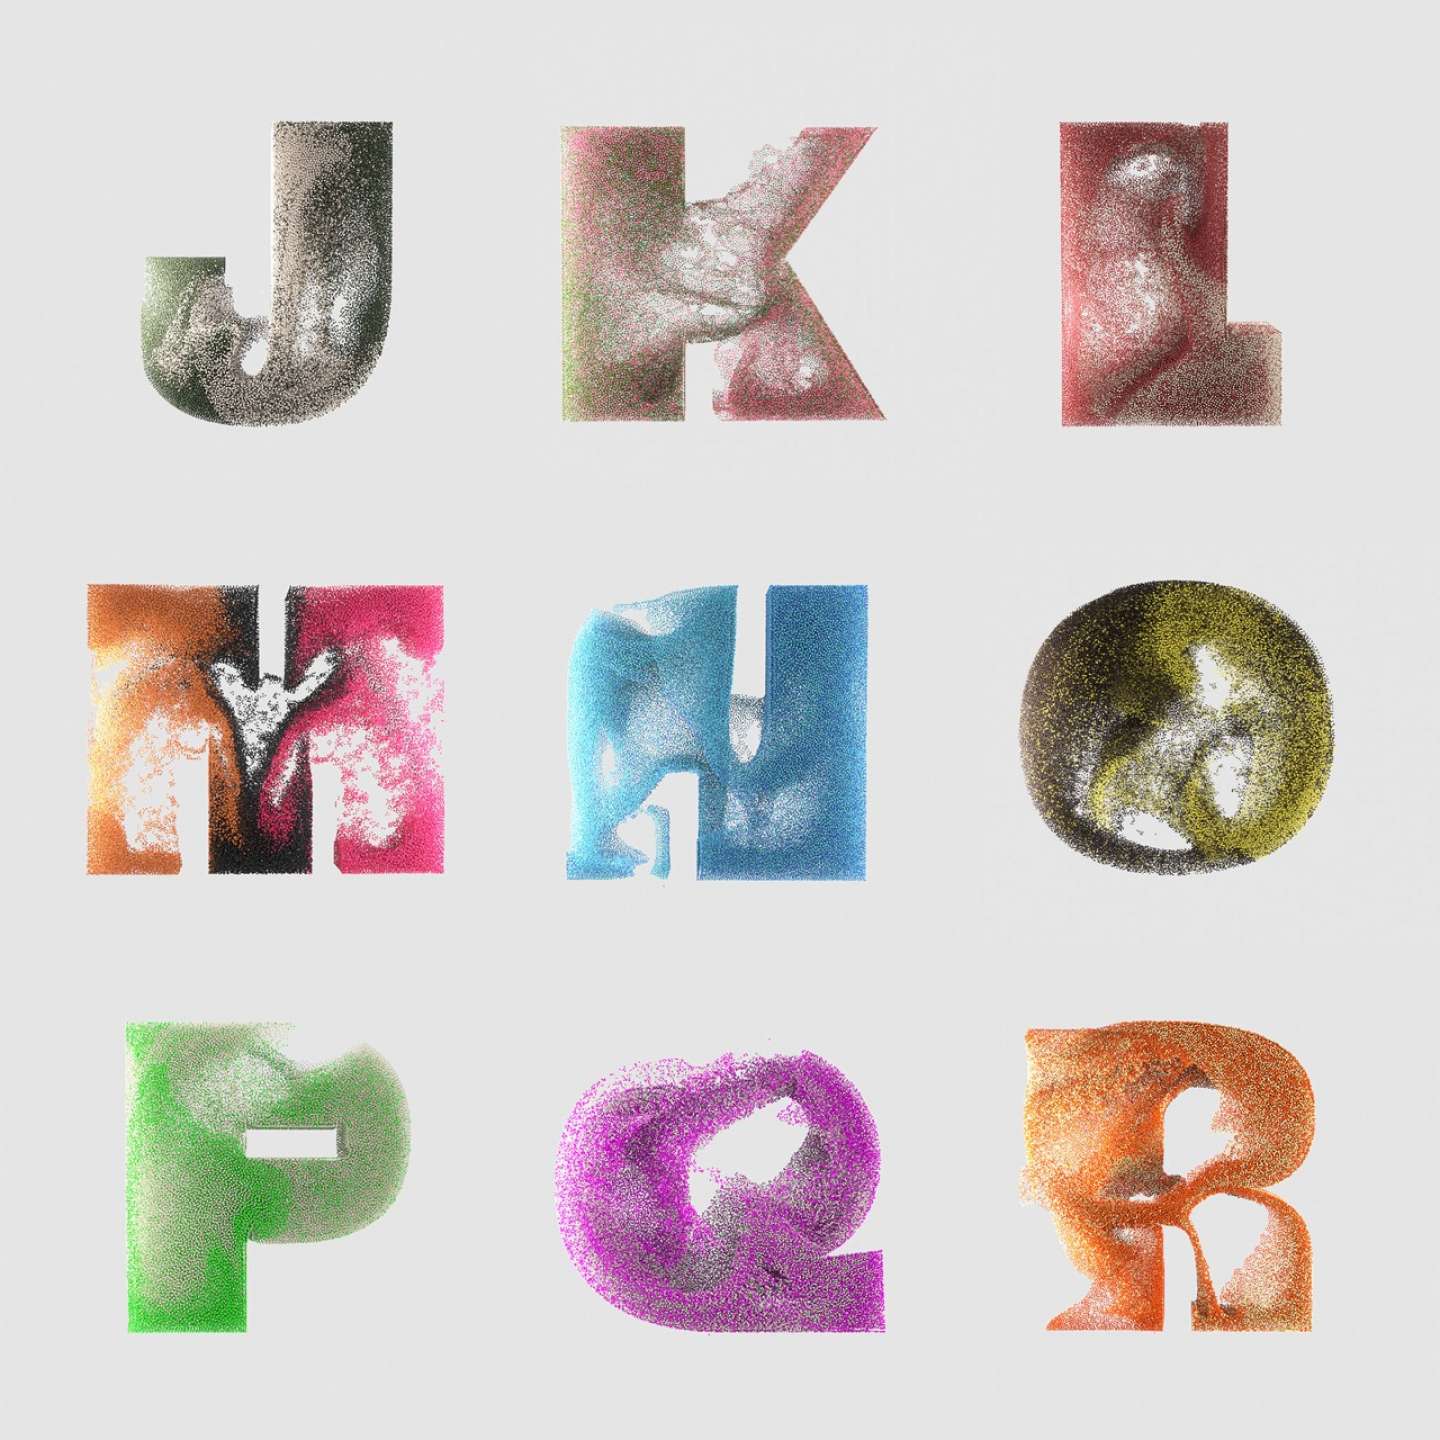 3D Letters